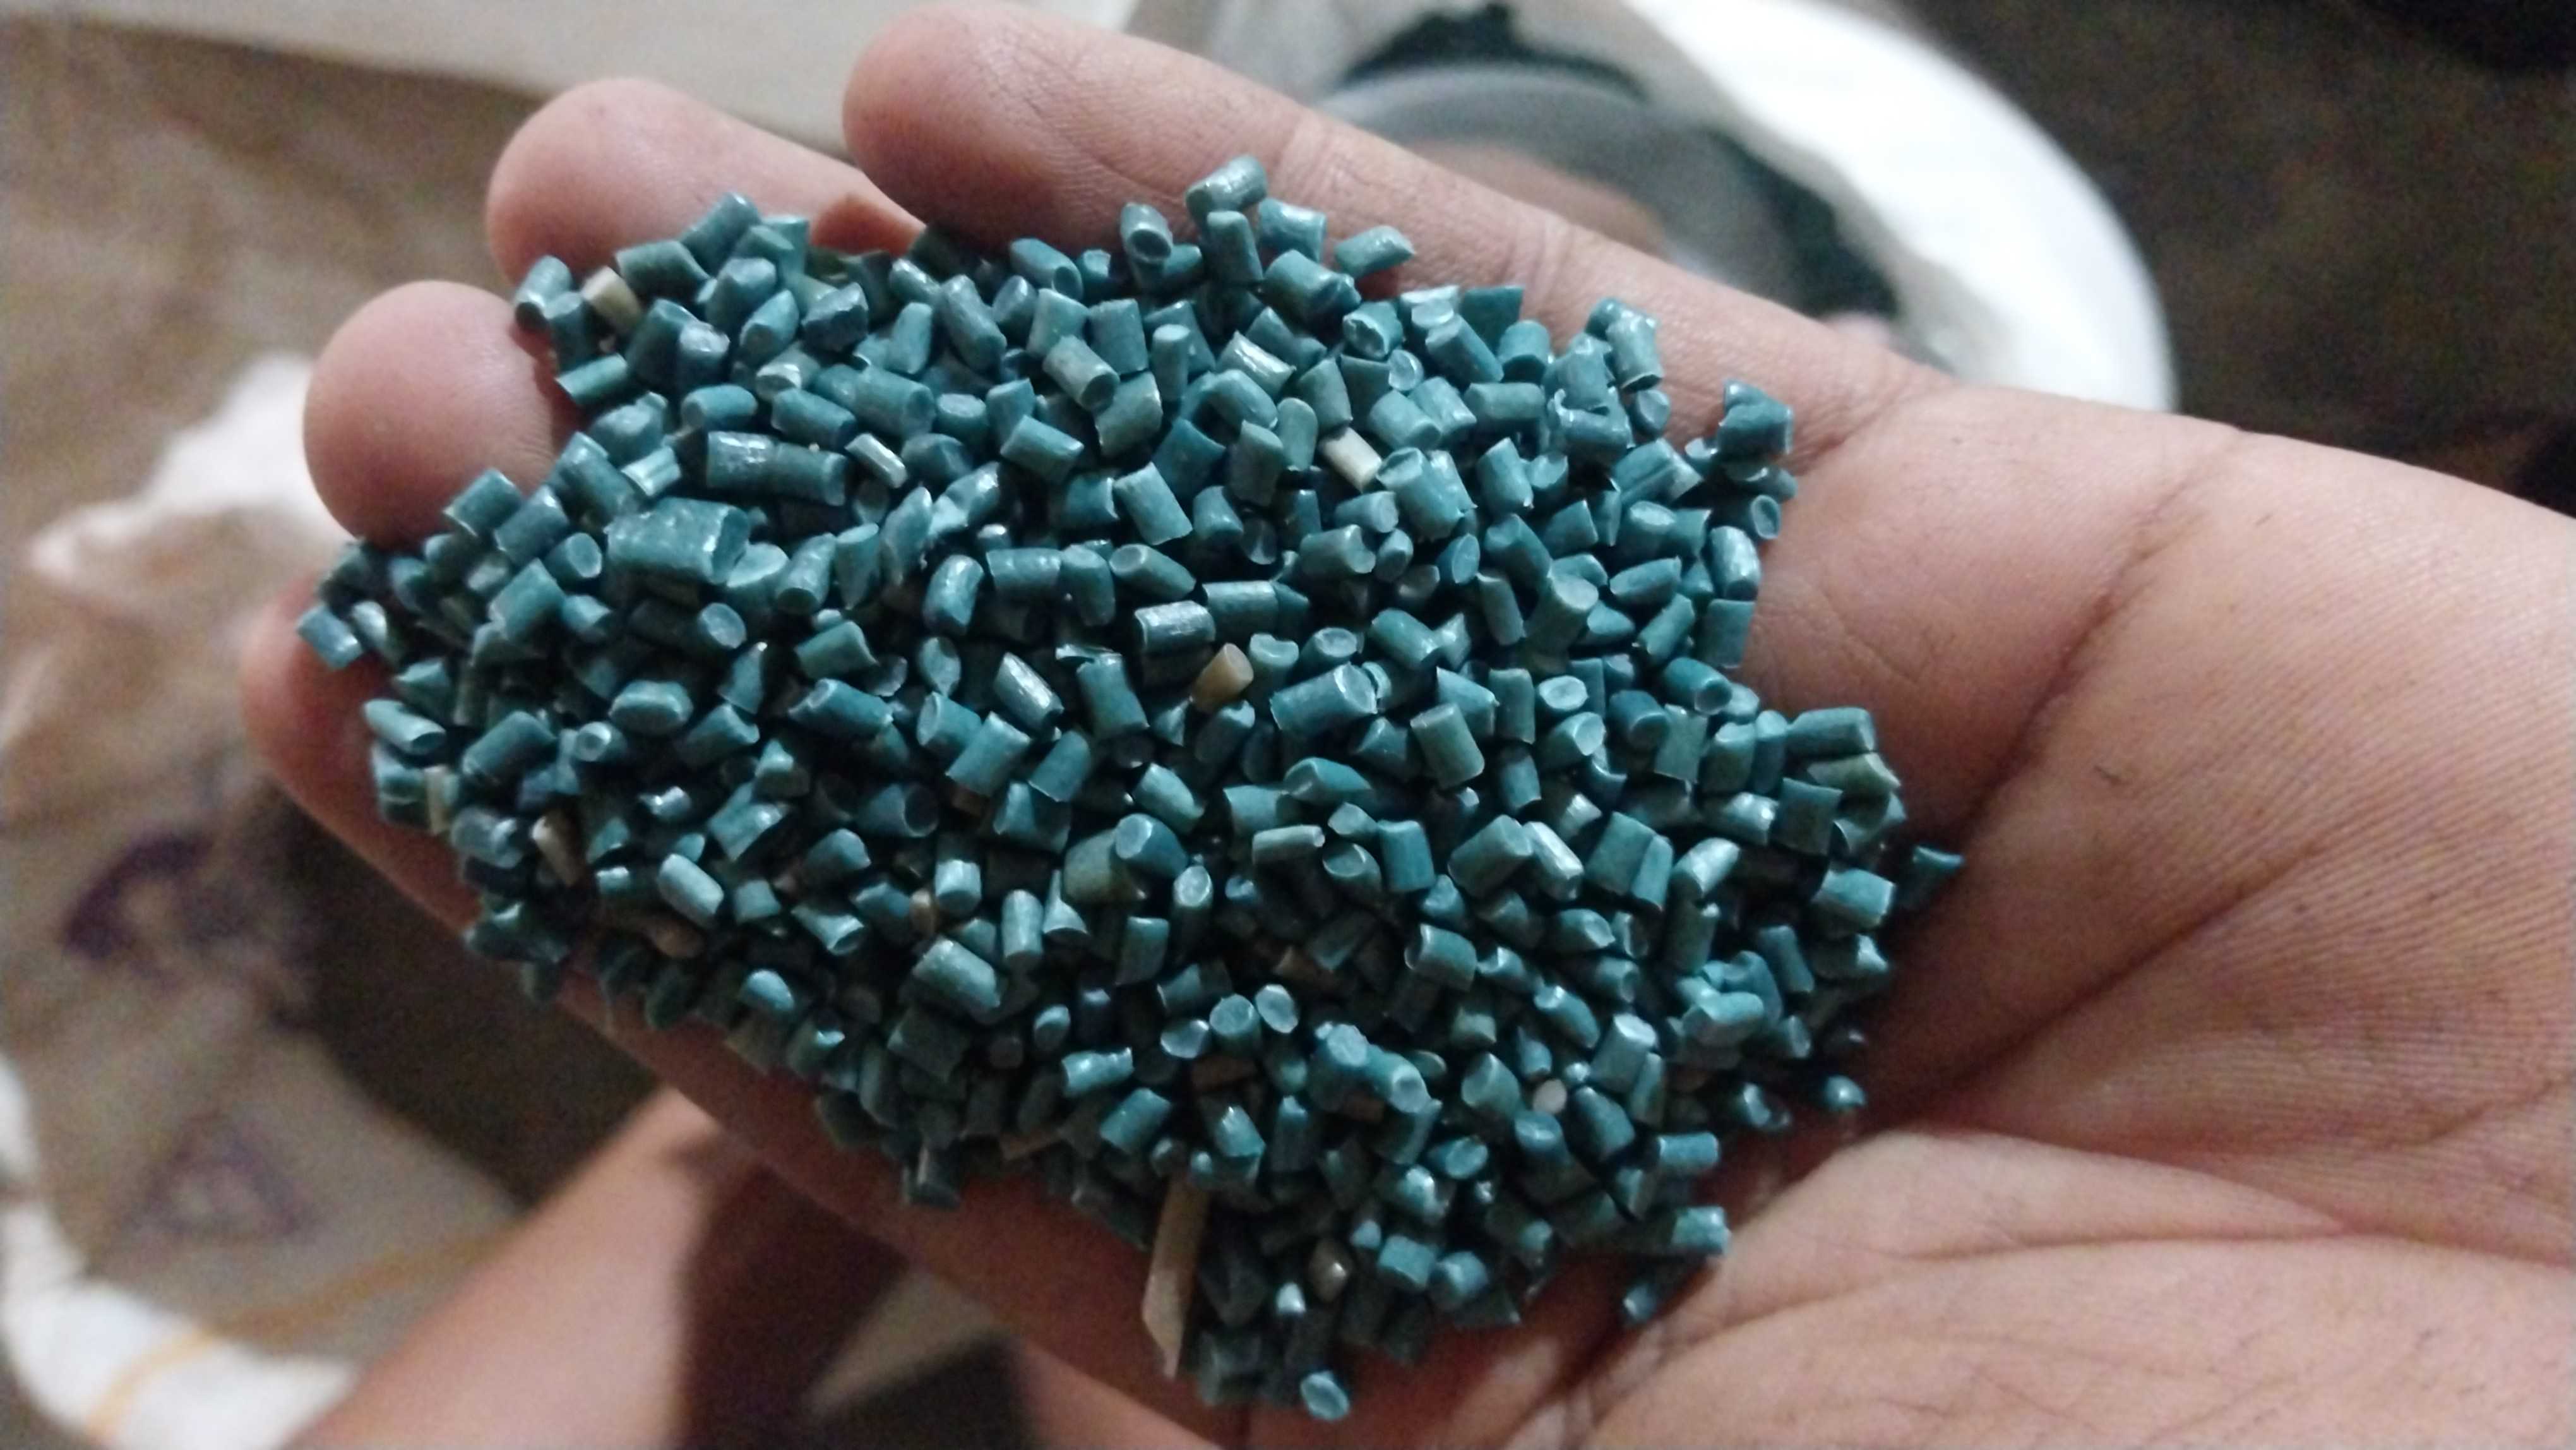 LD DANA LDPE Reprocess Granule Blow salepur kotla uttar pradesh india Plastic4trade